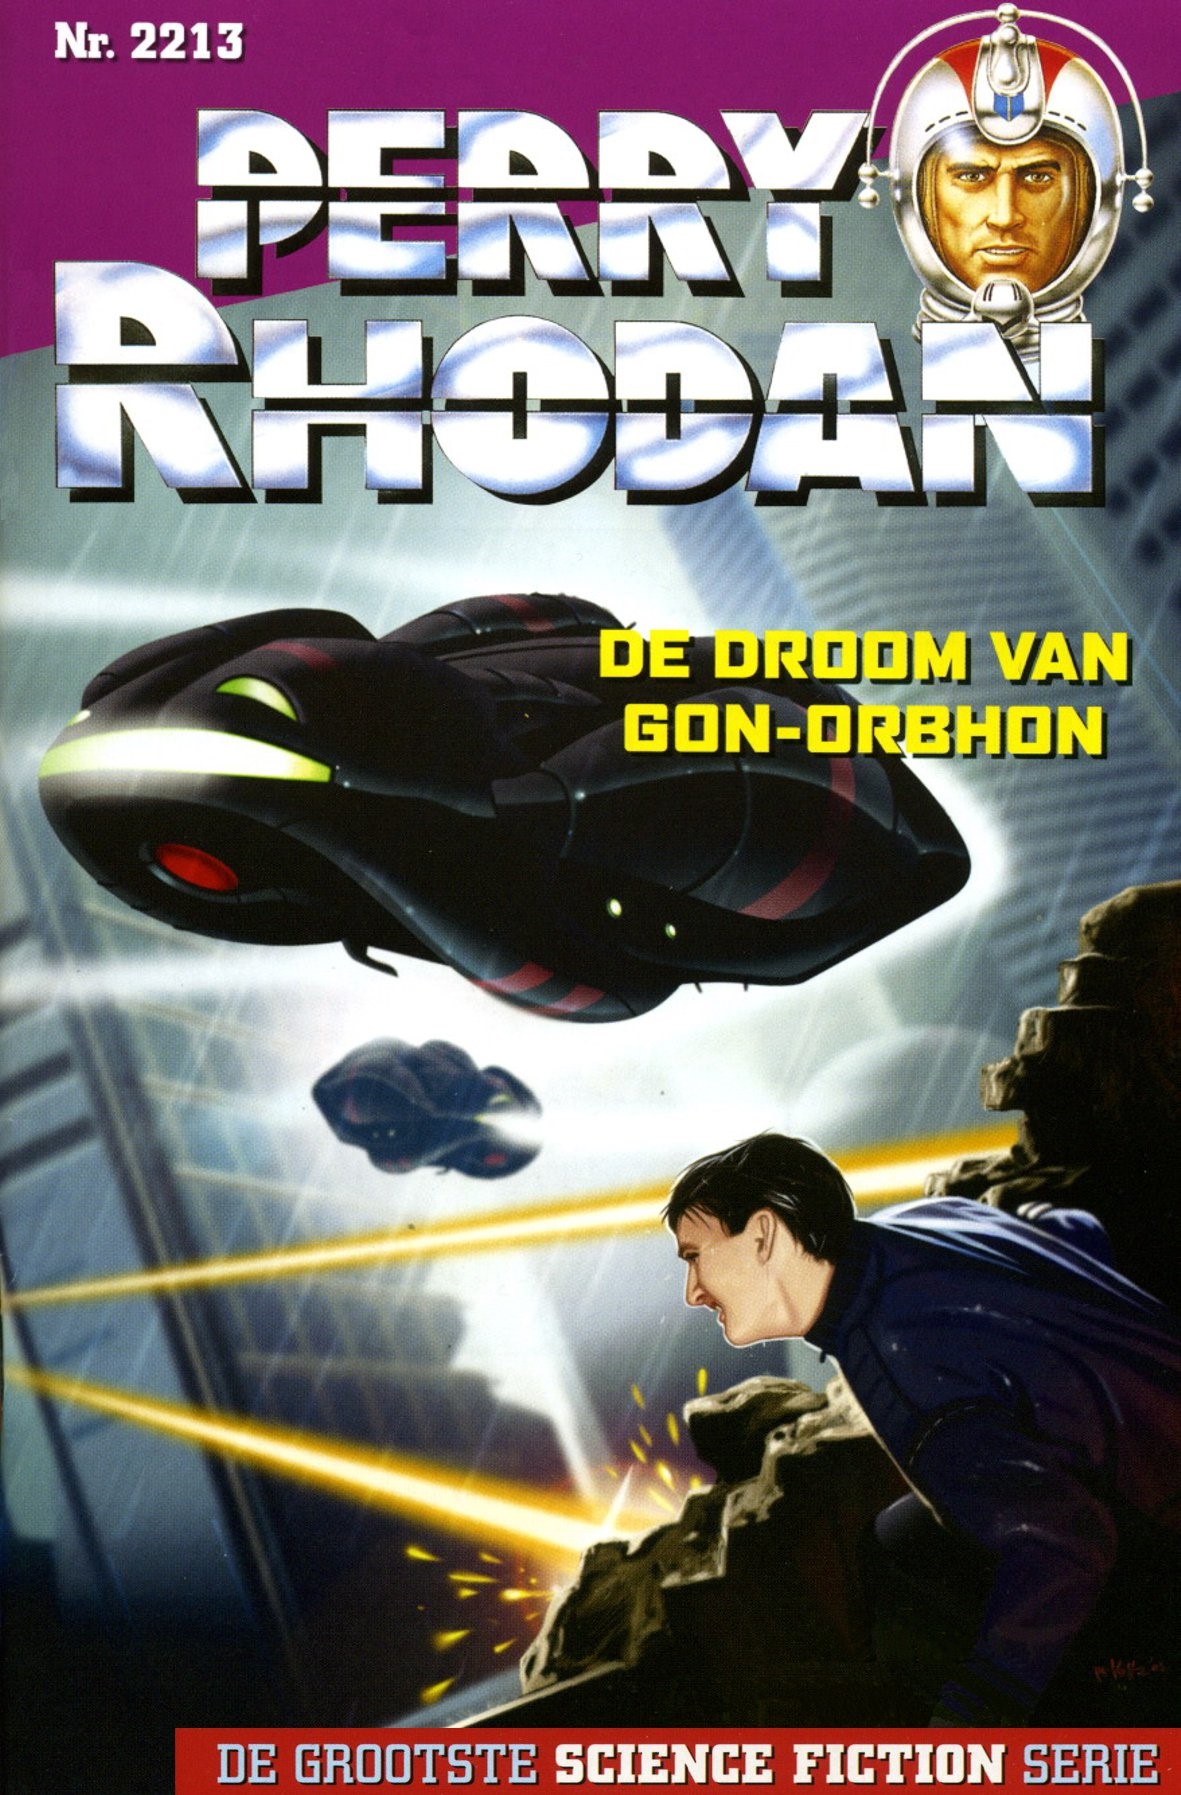 Perry Rhodan 2213 - De droom van Gon-Orbhon